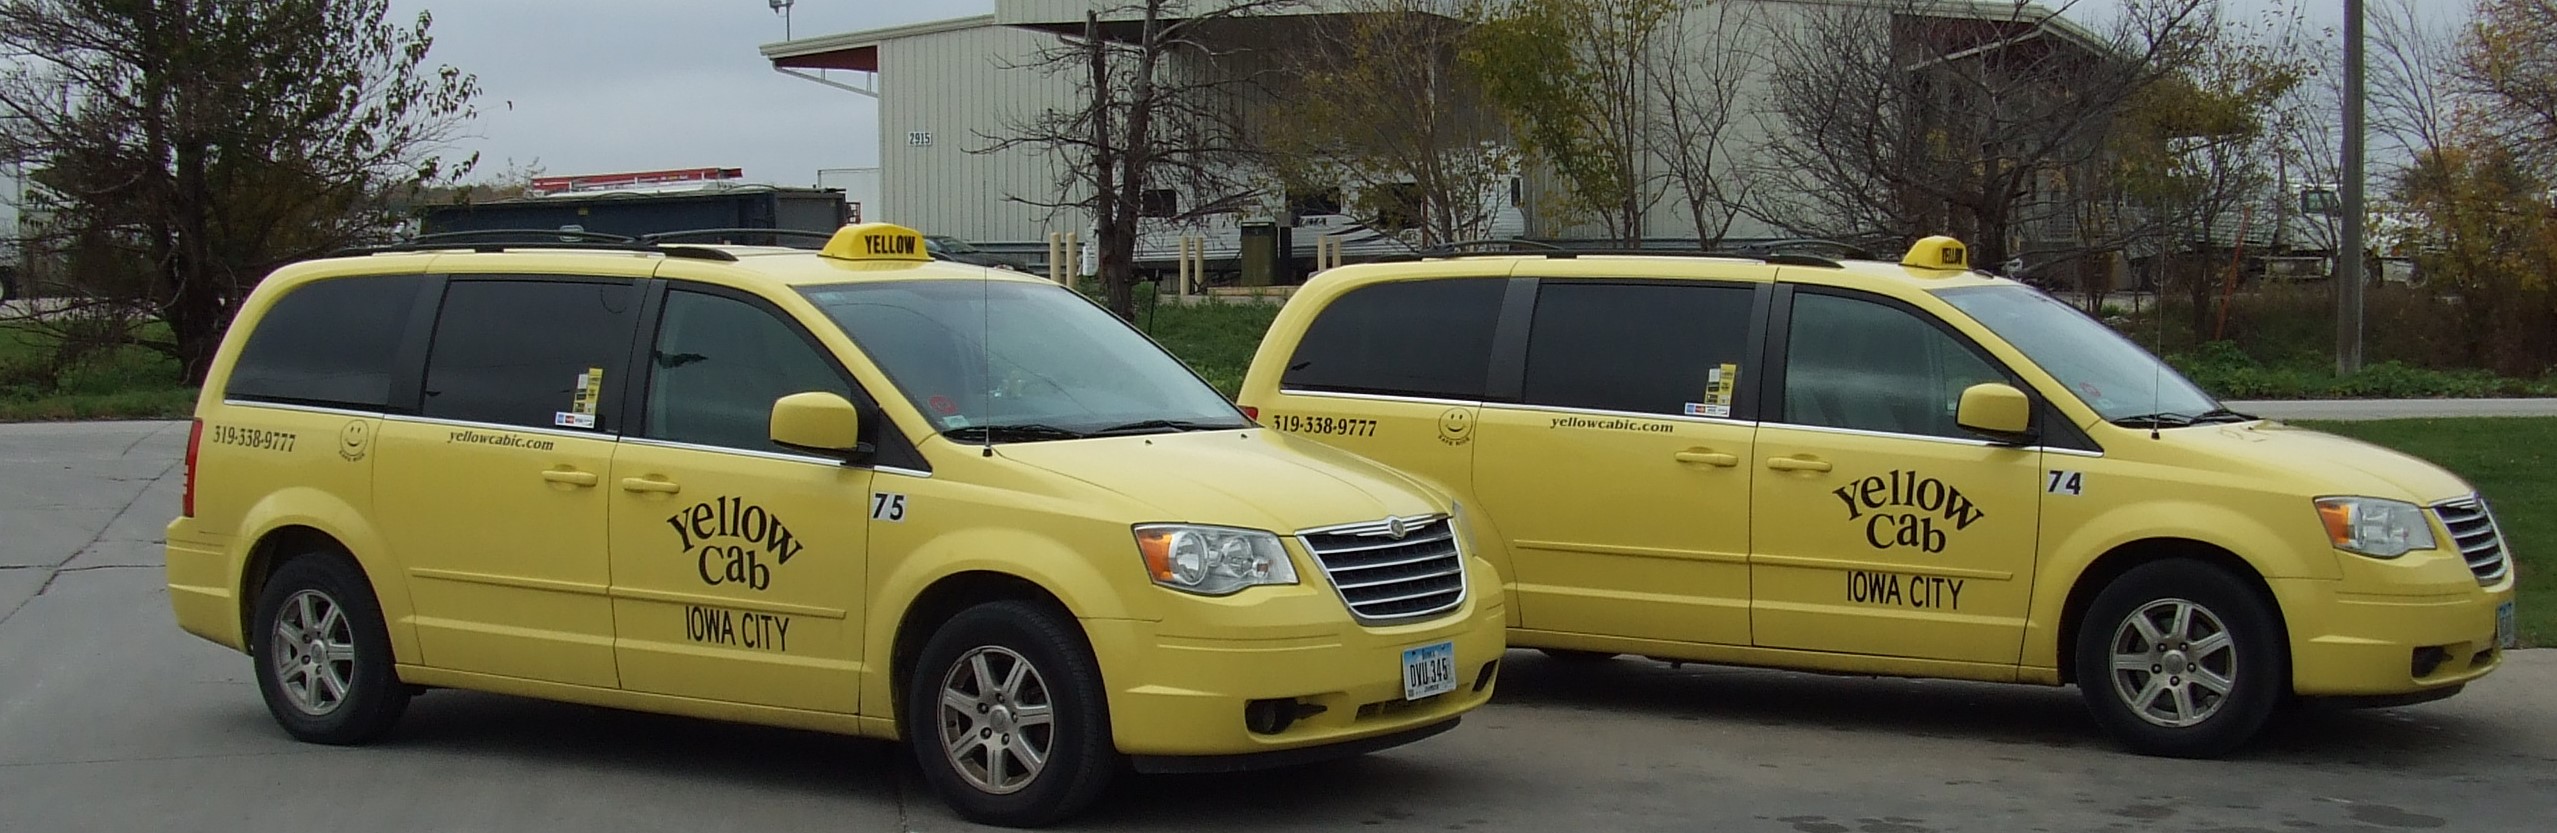 Iowa City Cab | Yellow Cab of Iowa City